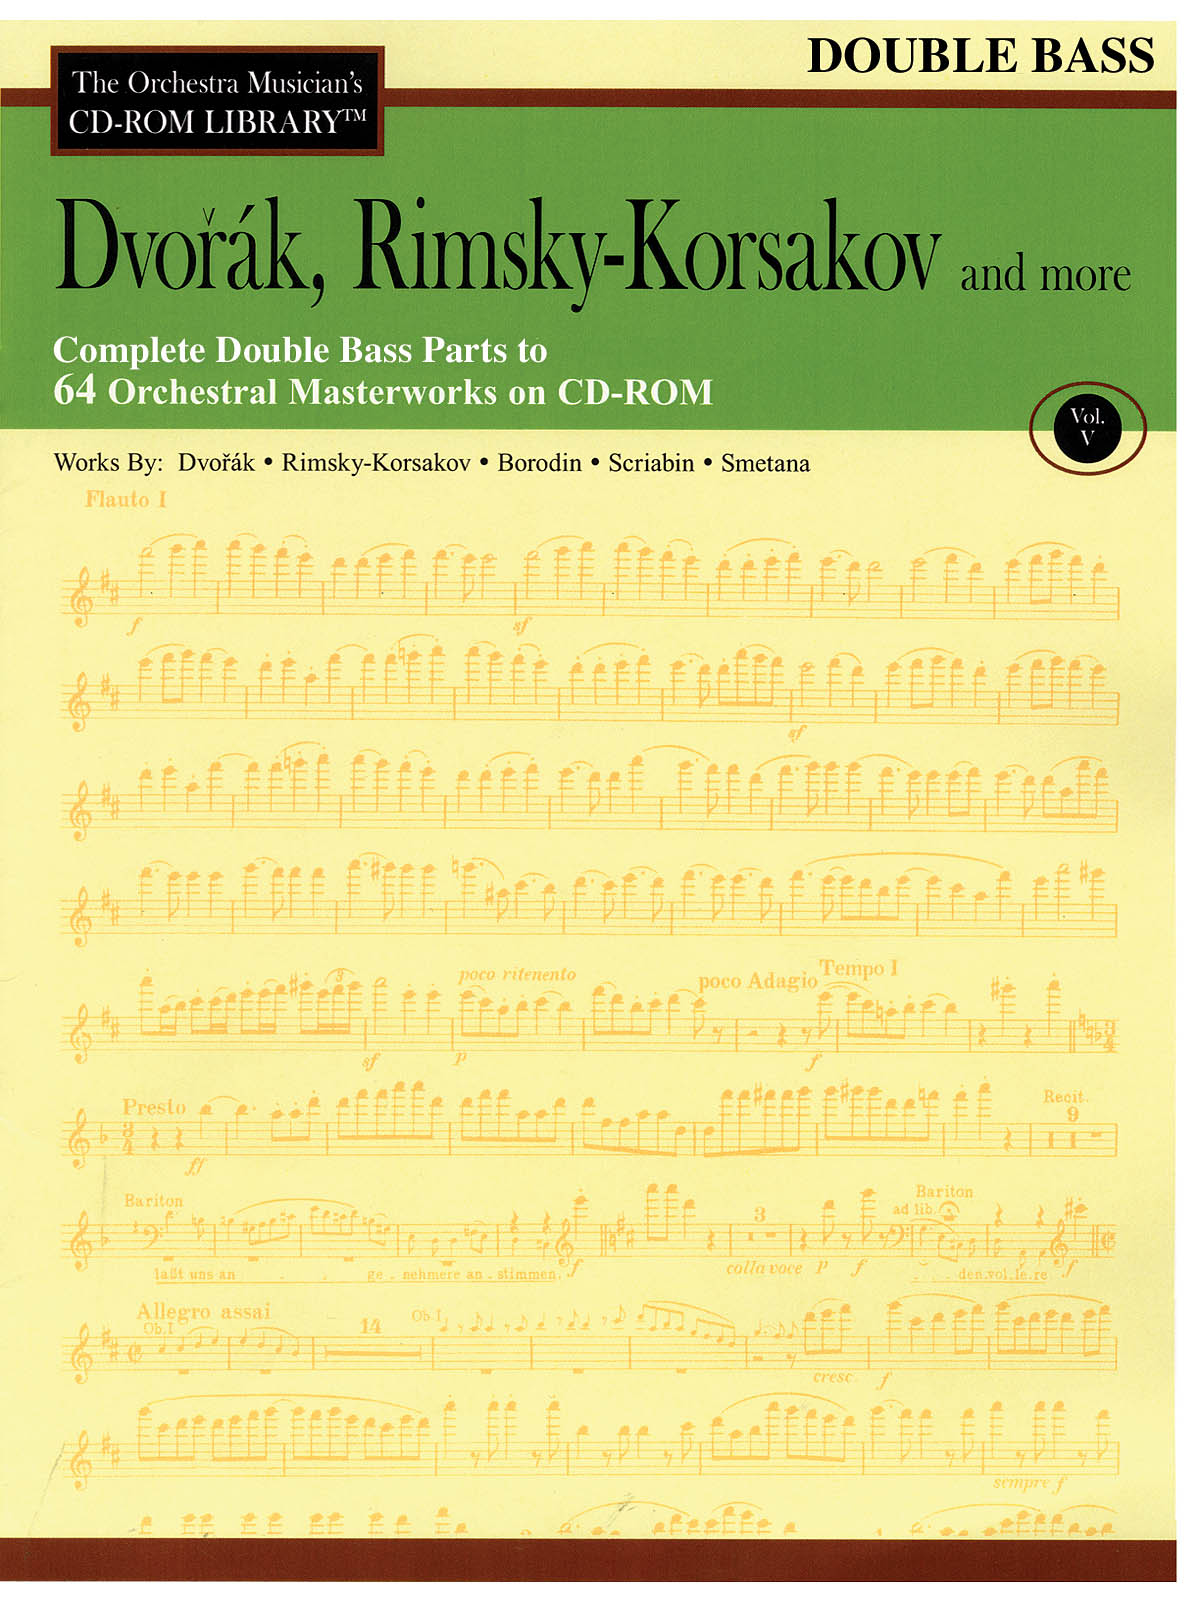 Dvorak, Rimsky-Korsakov and More - Volume 5(The Orchestra Musician's CD-ROM Library - Double Bass)